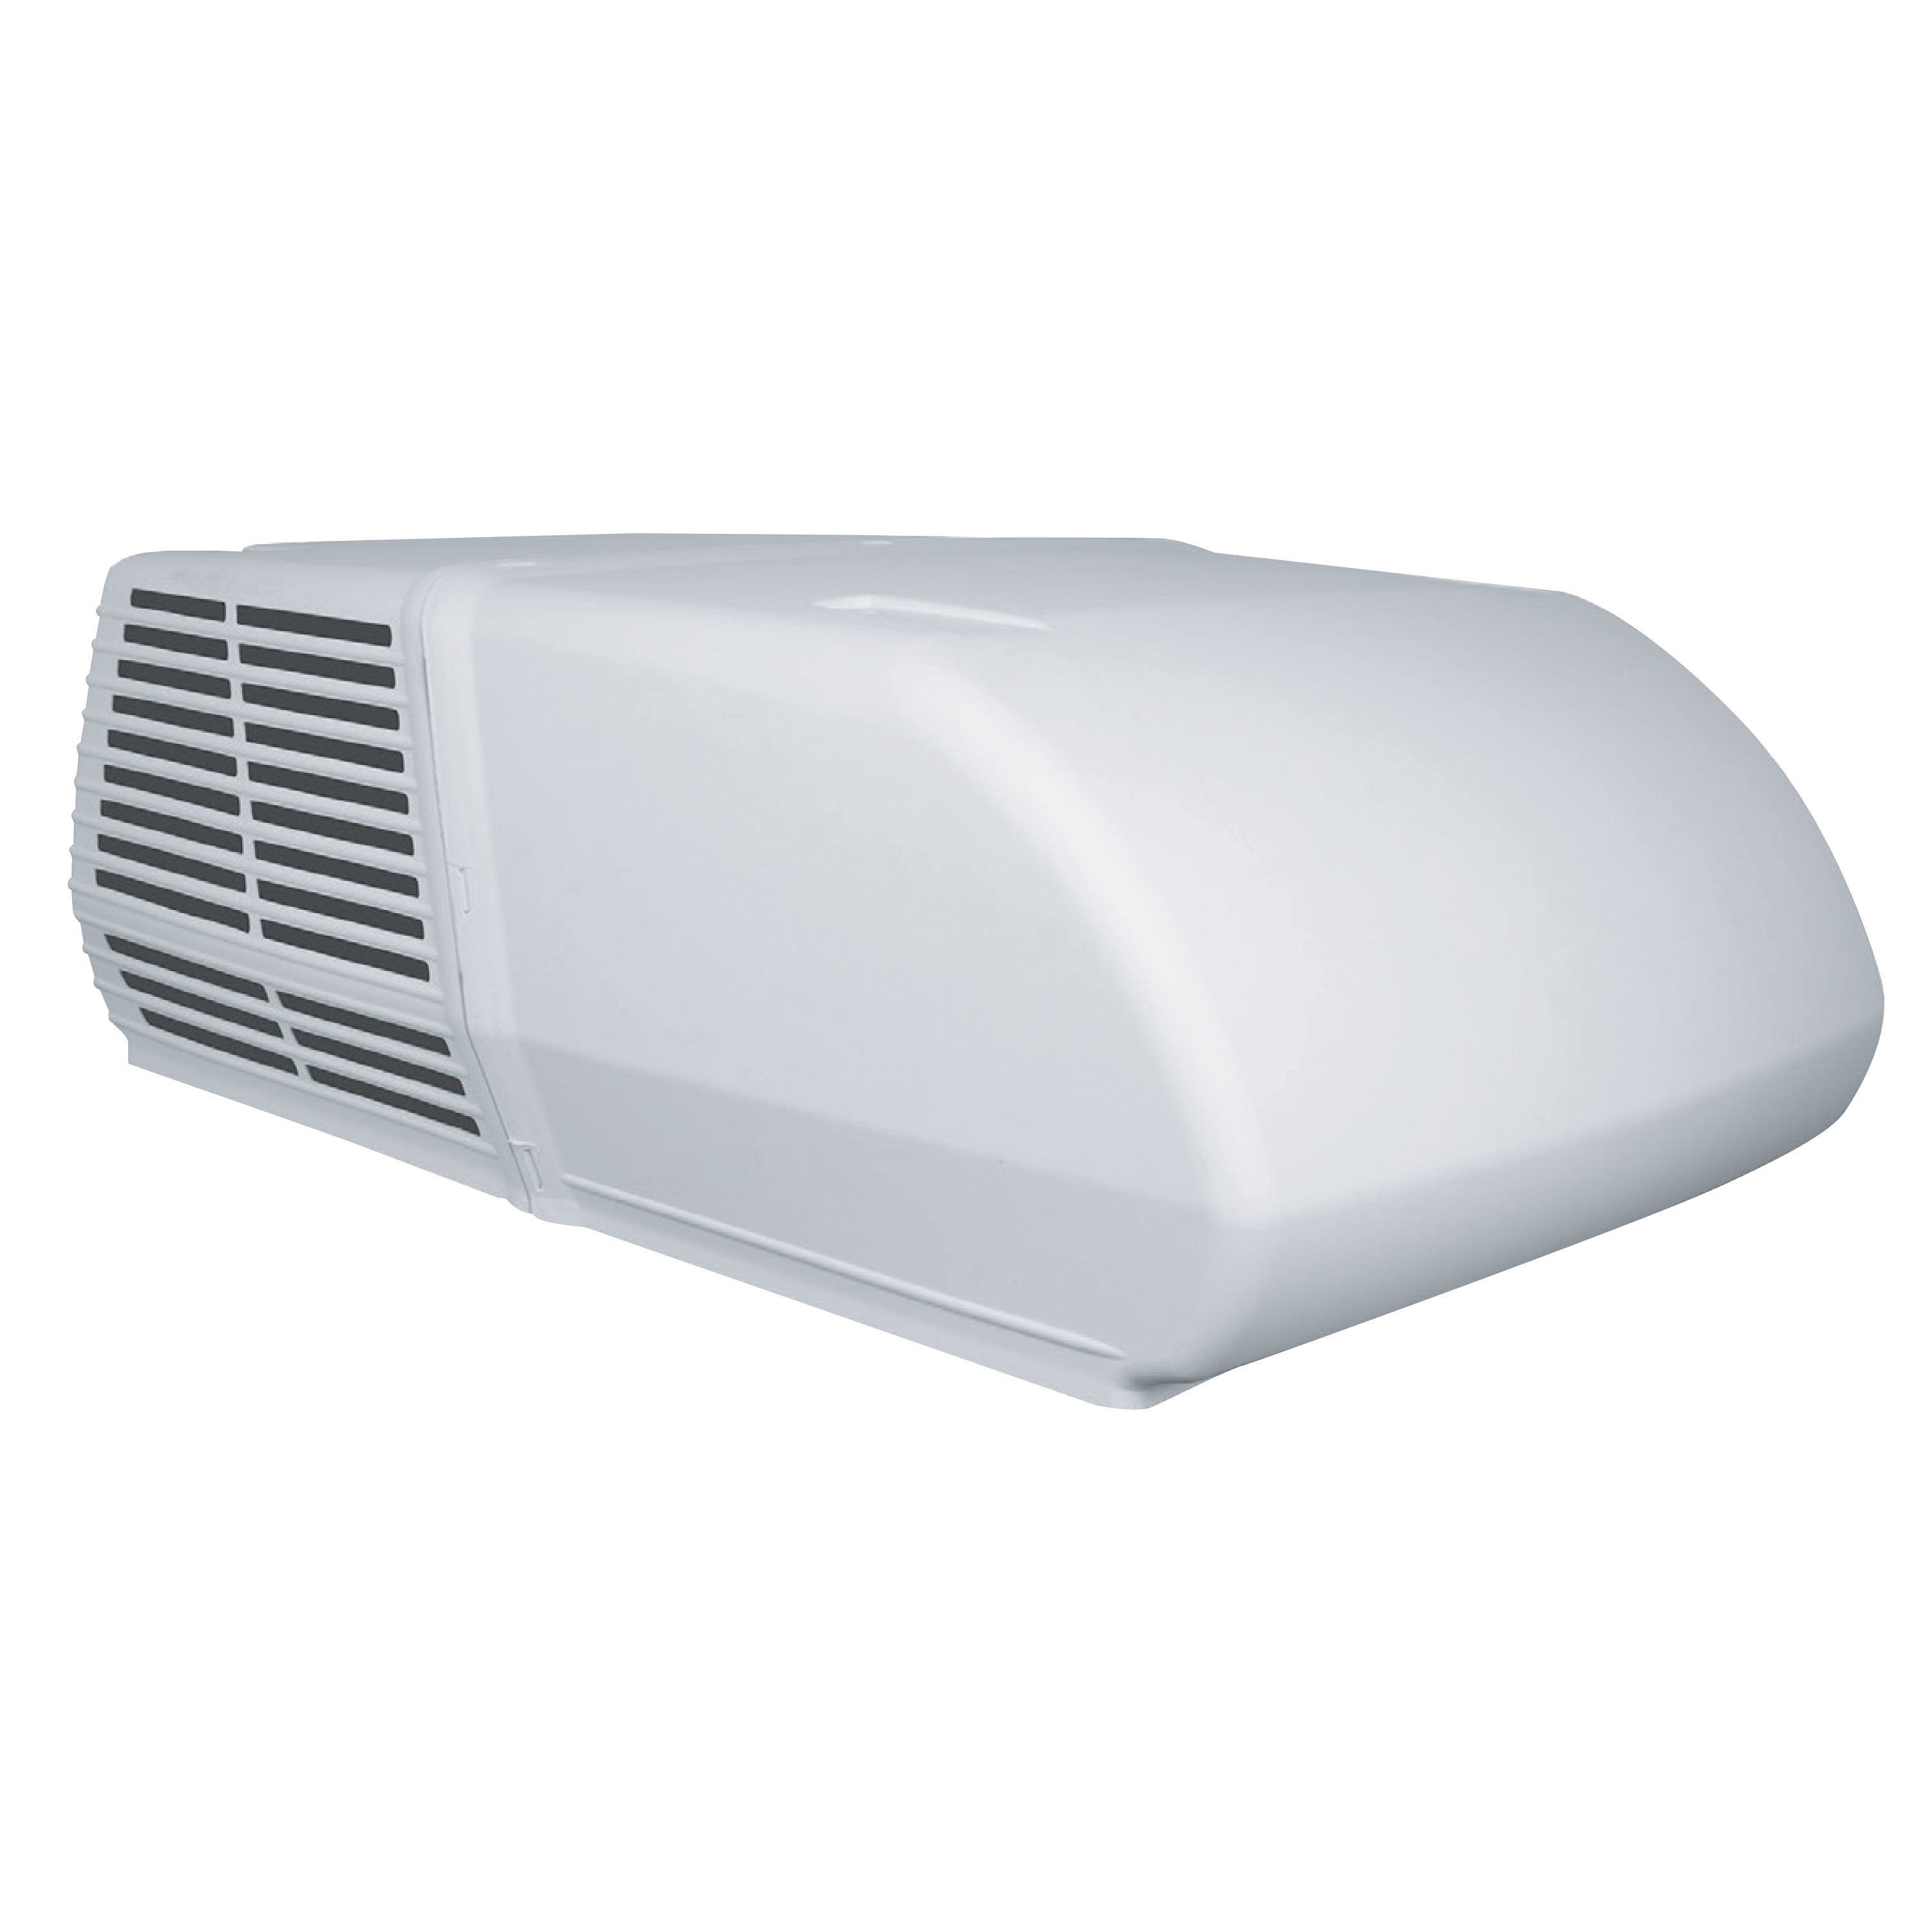 RVP 48204C866 Coleman Mach 15 15K White Air Conditioner